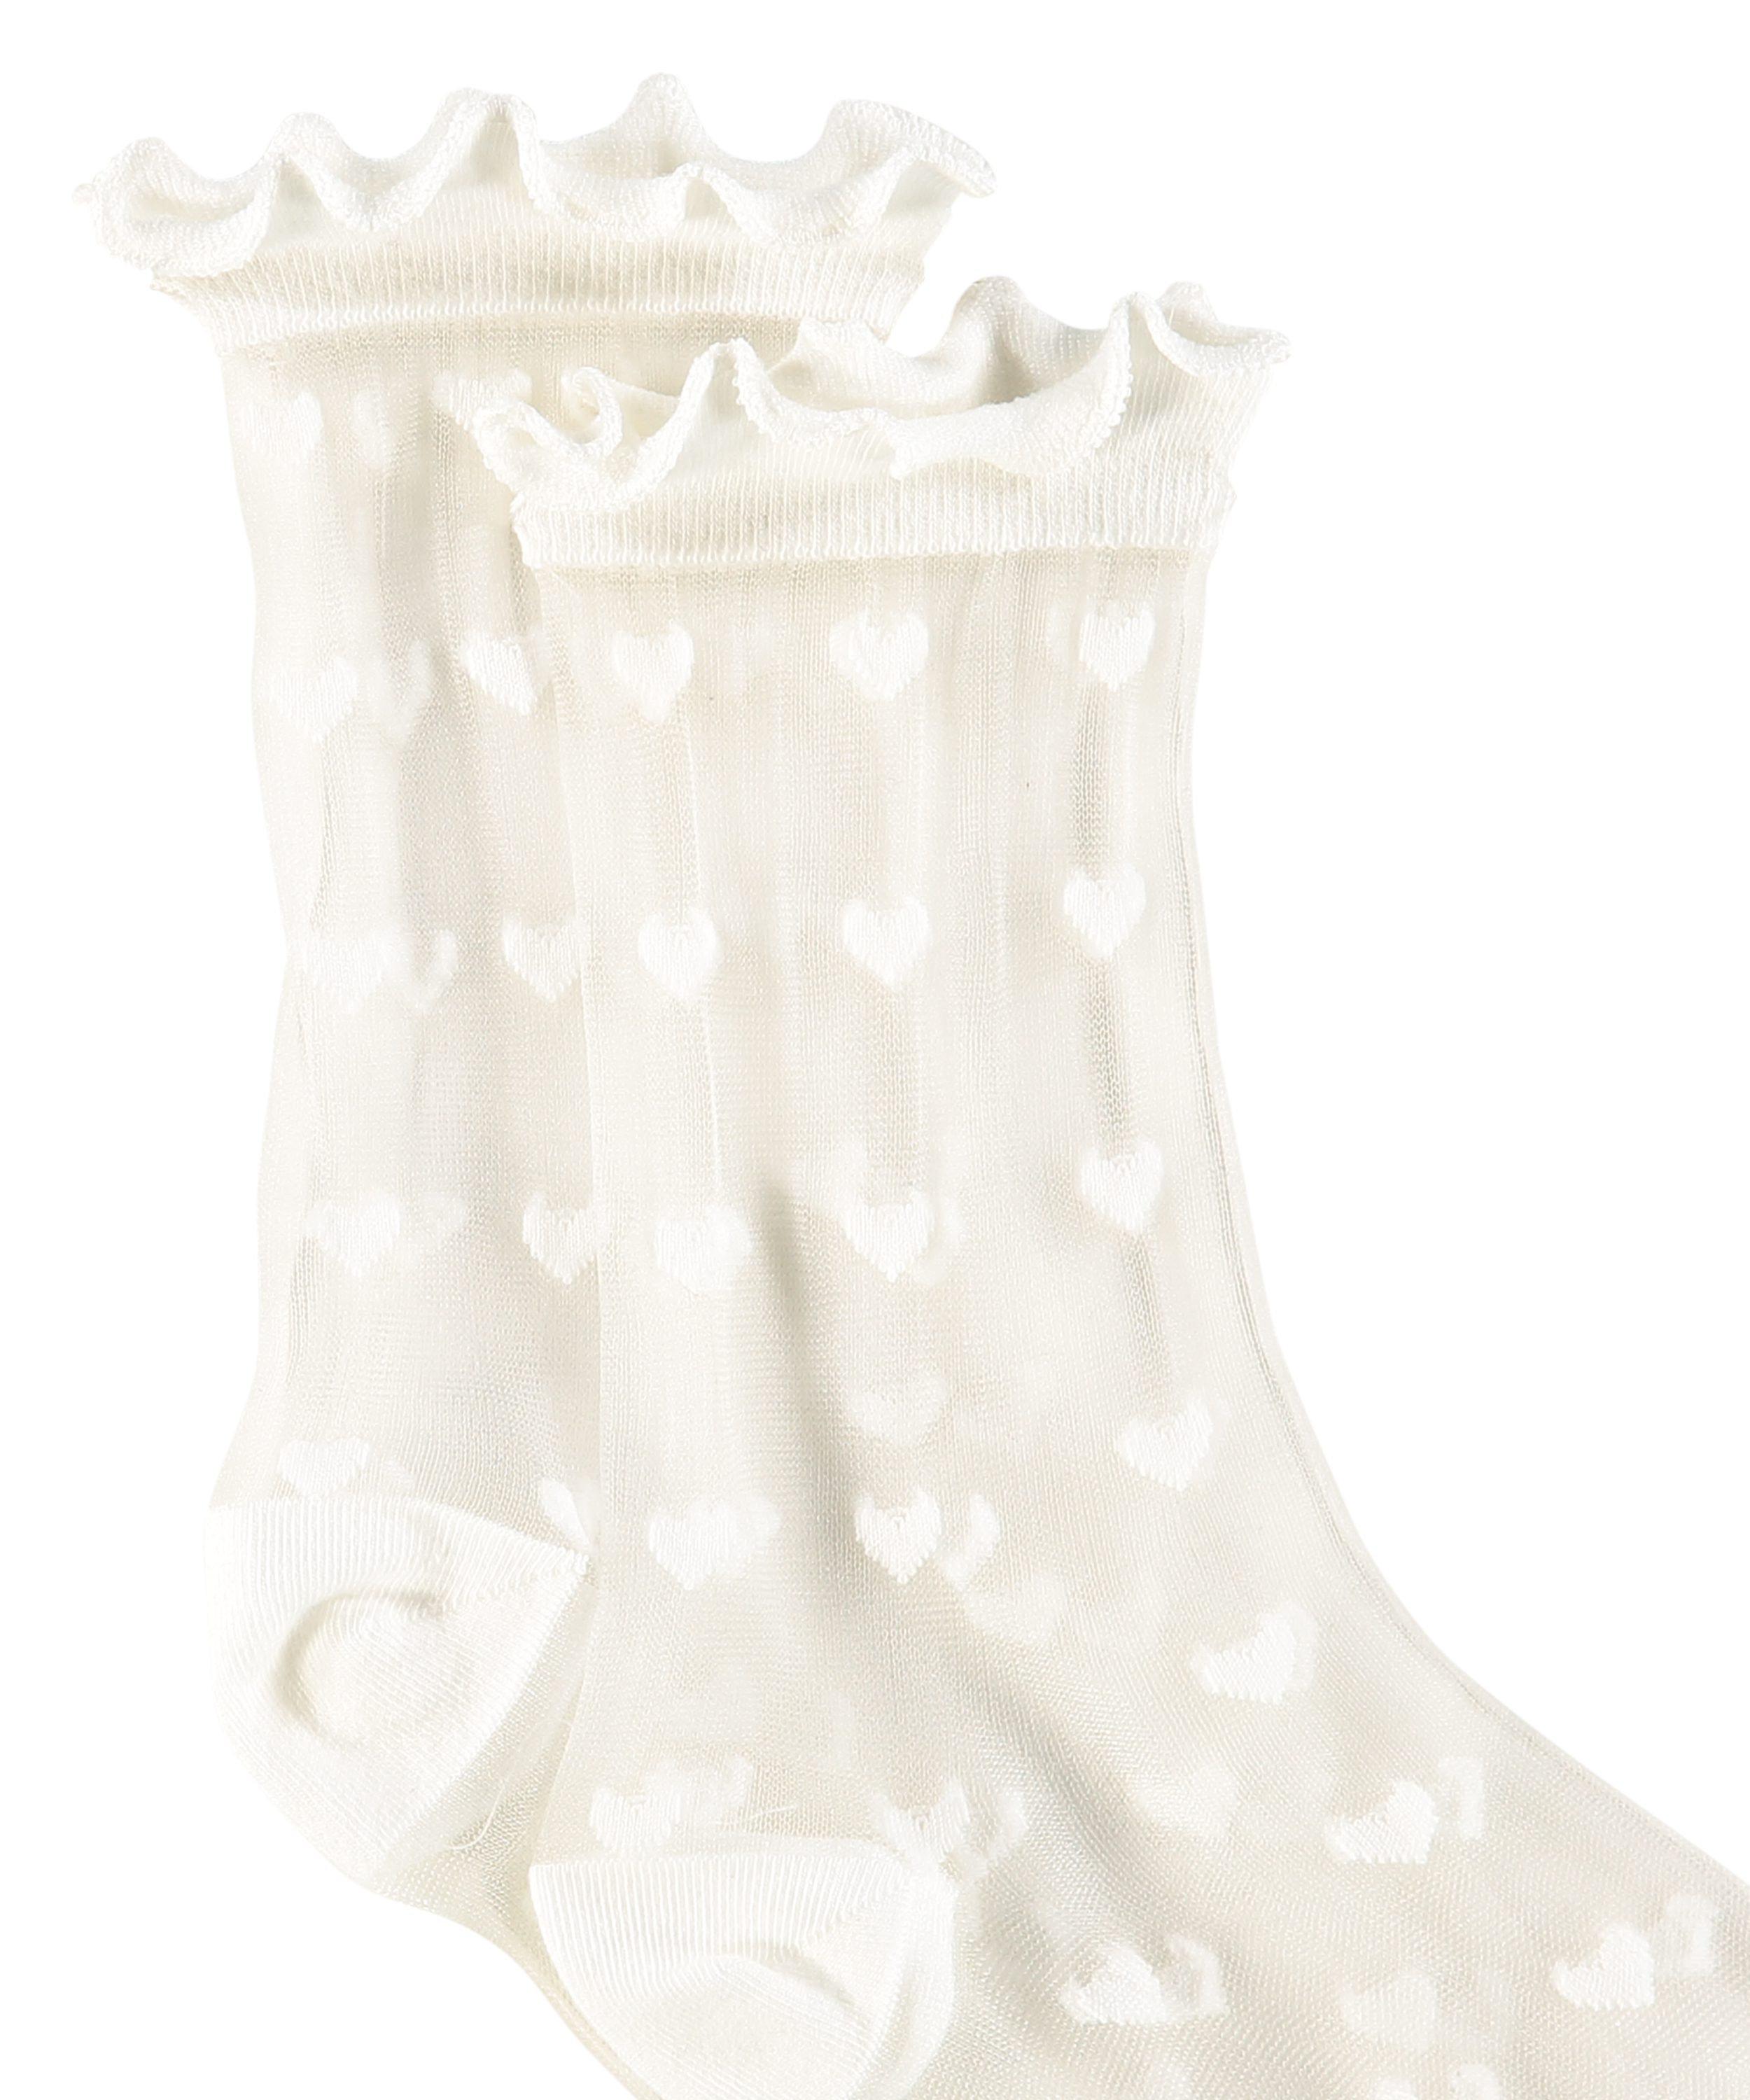 1 pair of Fashion socks, White, main